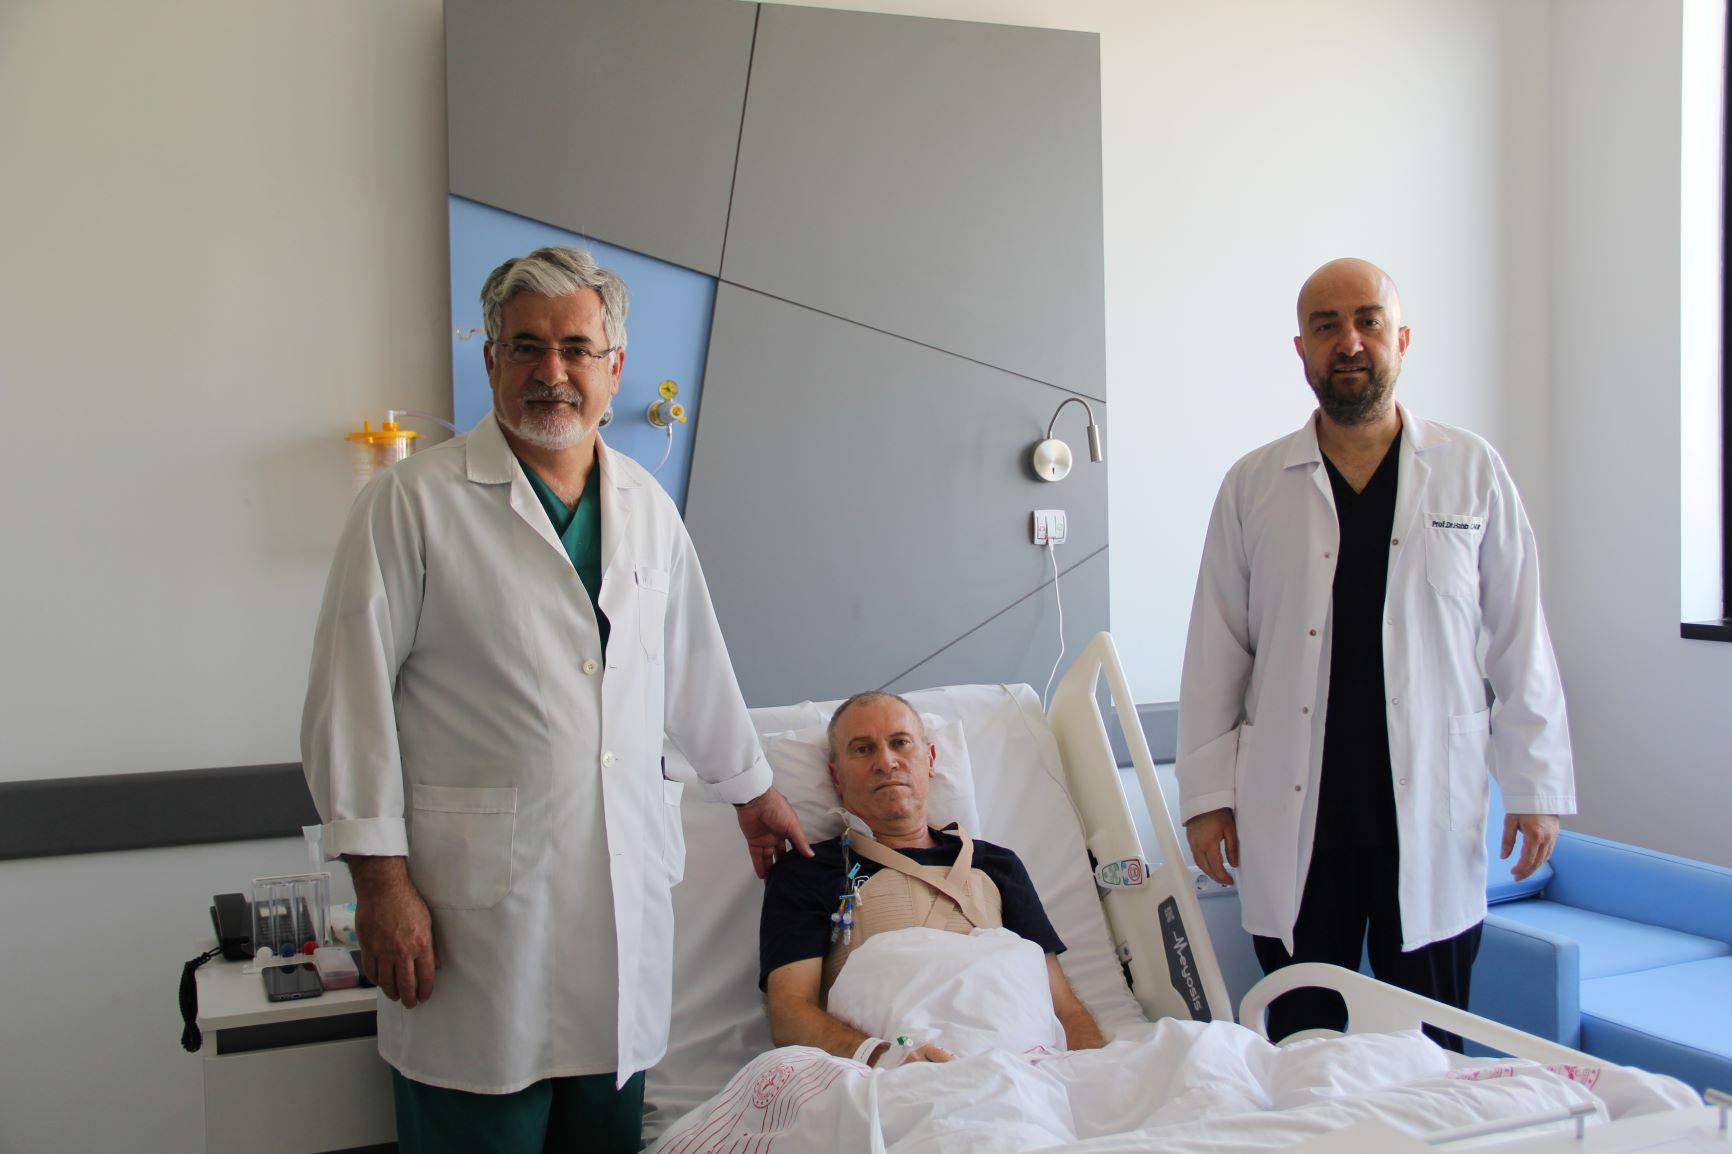 İzmir Şehir Hastanesi’nde Başarılı Bir Kalp Cerrahisi Örneği